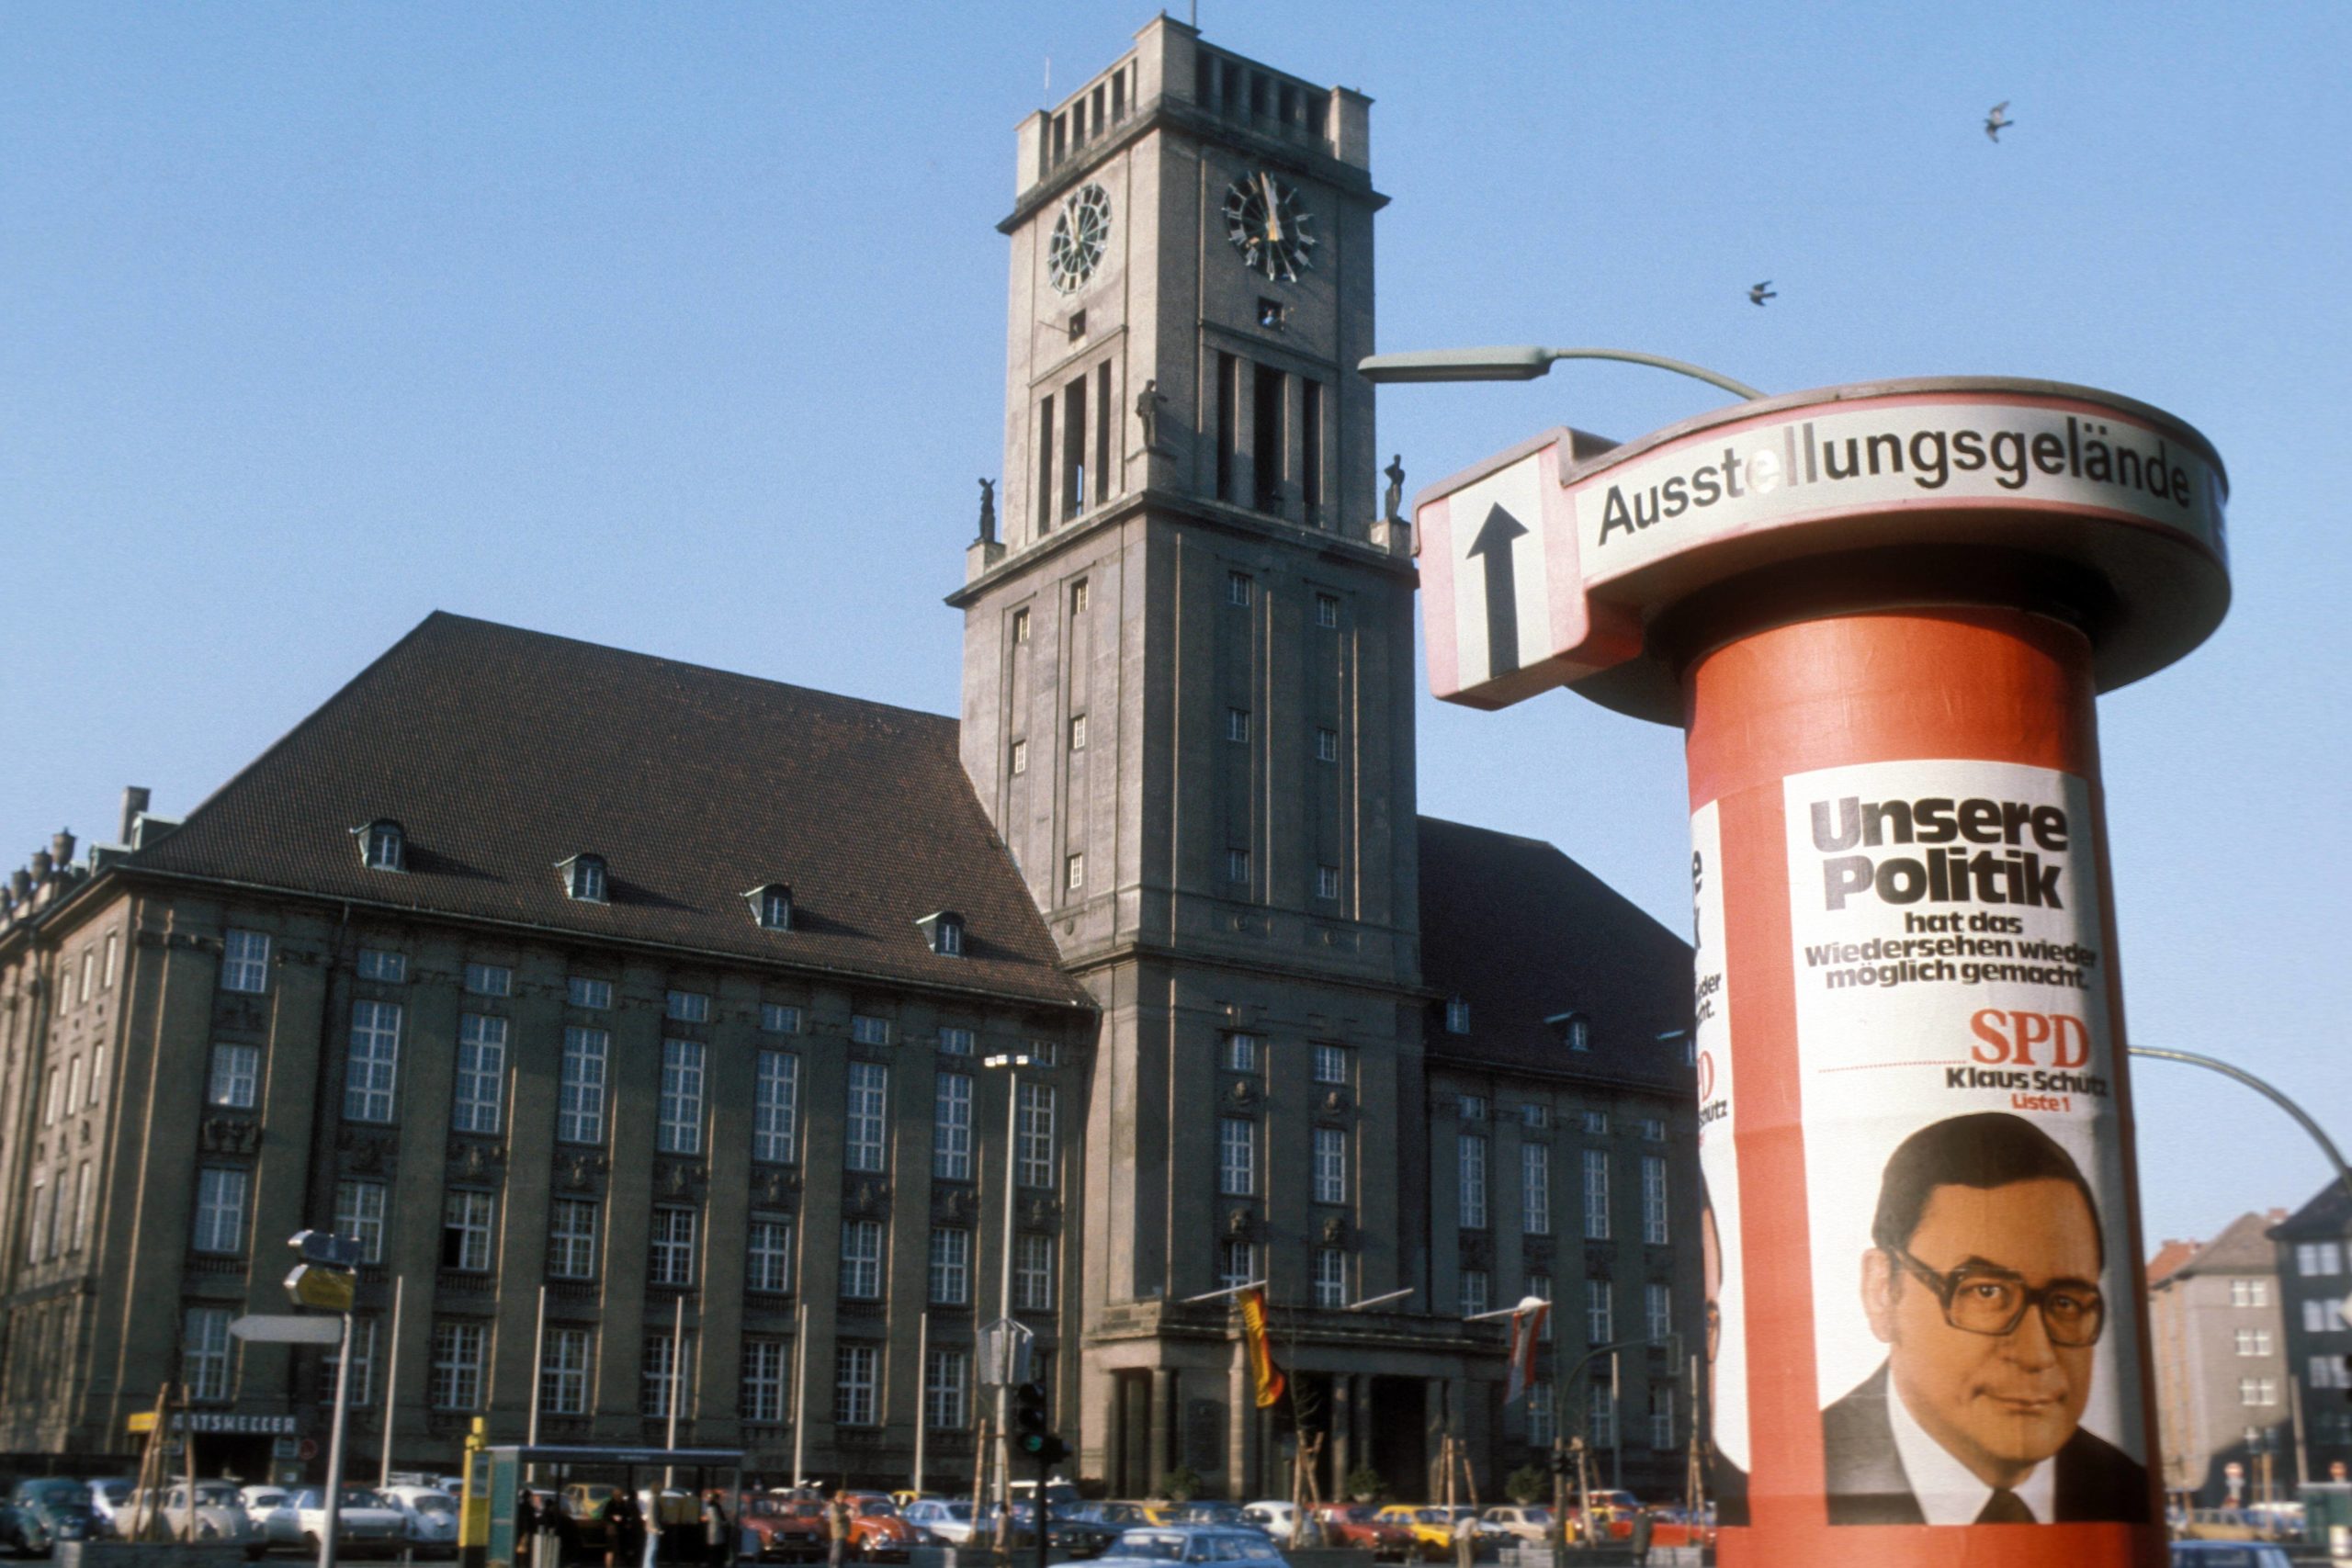 Litfaßsäulen in Berlin trugen auch Parteiwerbung: Hier zu sehen ist ein Wahlplakat von Klaus Schütz (SPD) vor dem Rathaus Schöneberg, 1975. Foto: Imago/Sven Simon